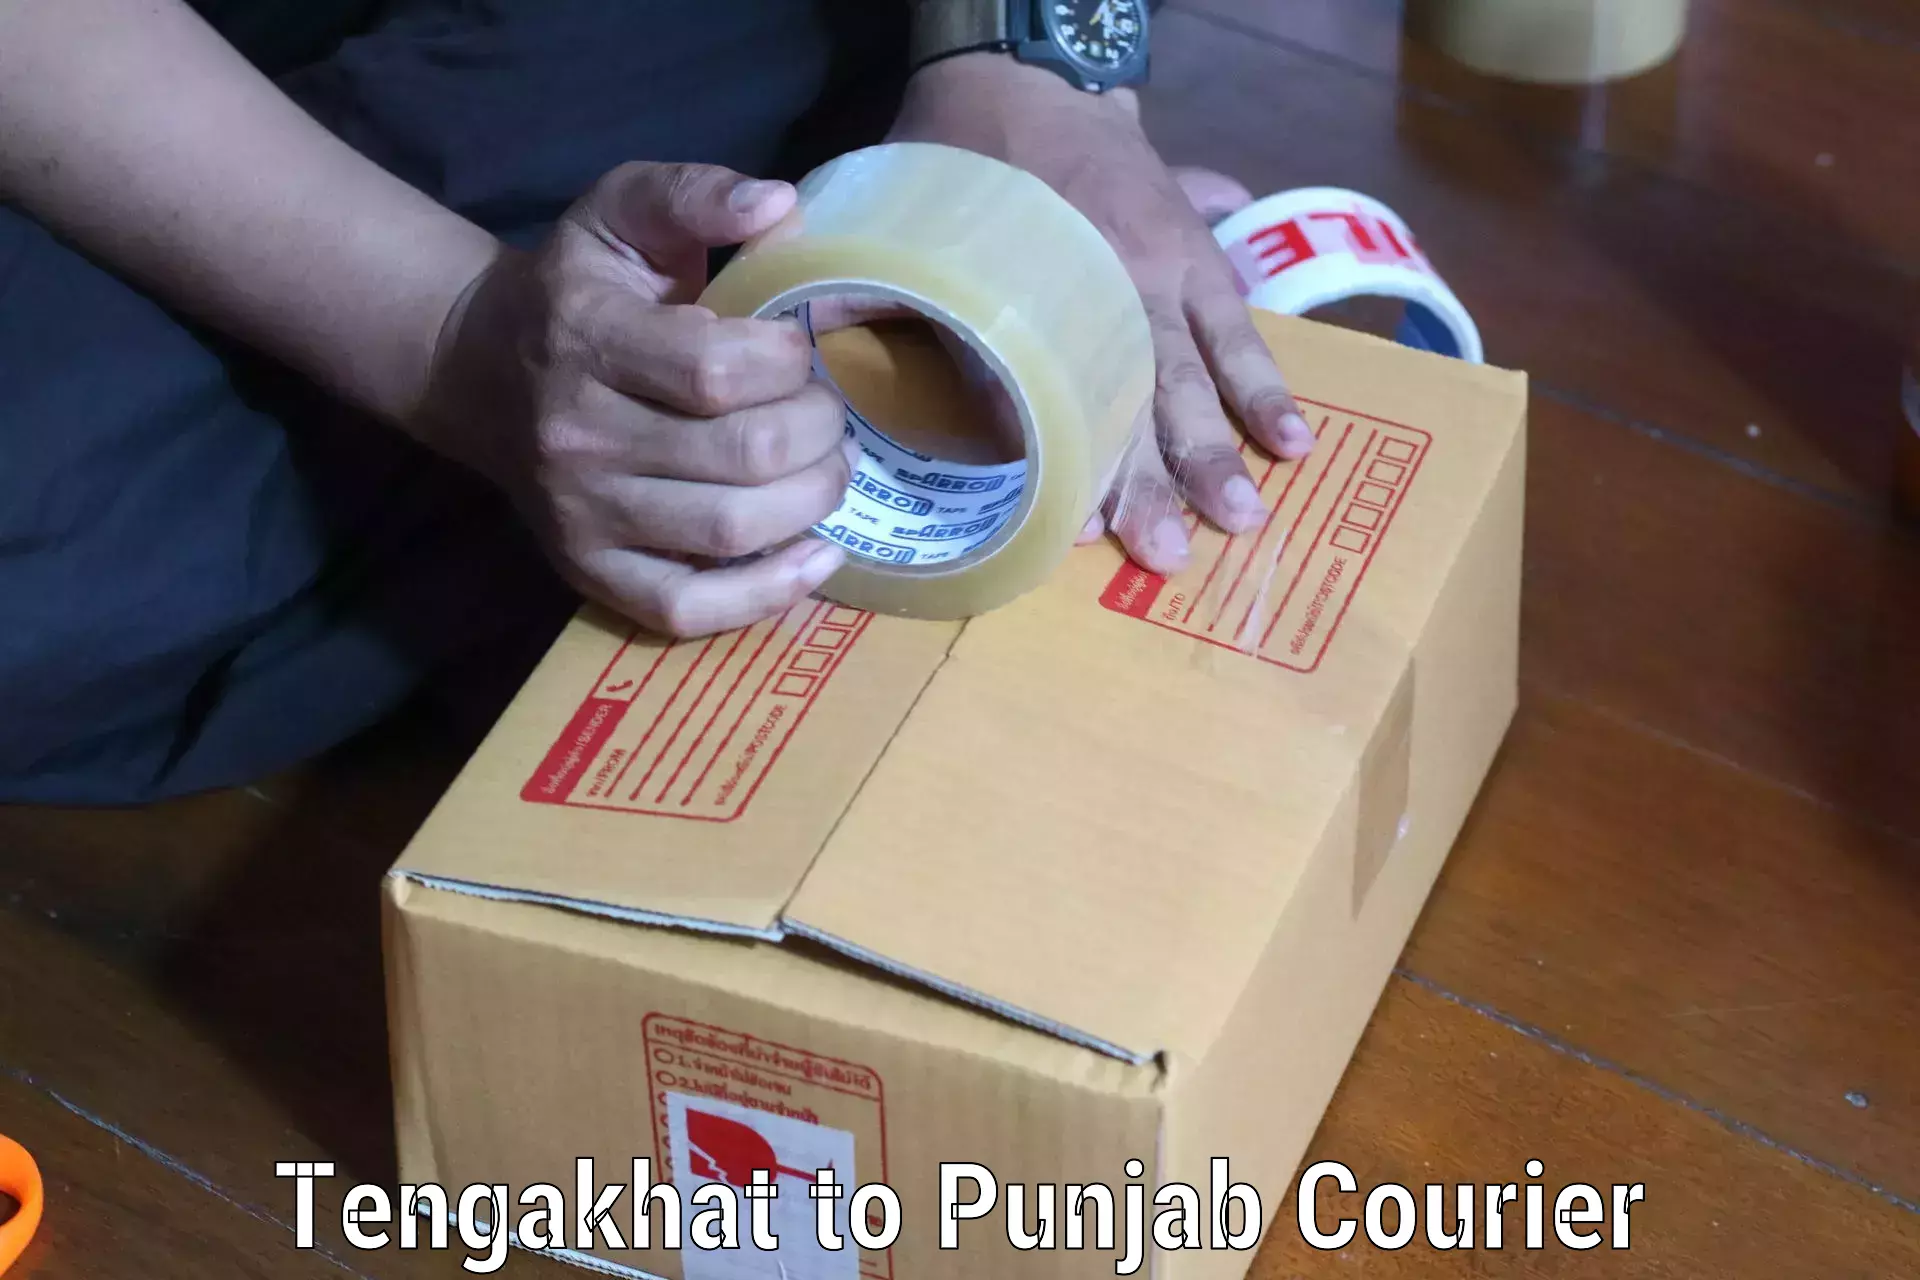 Efficient parcel service Tengakhat to Zirakpur